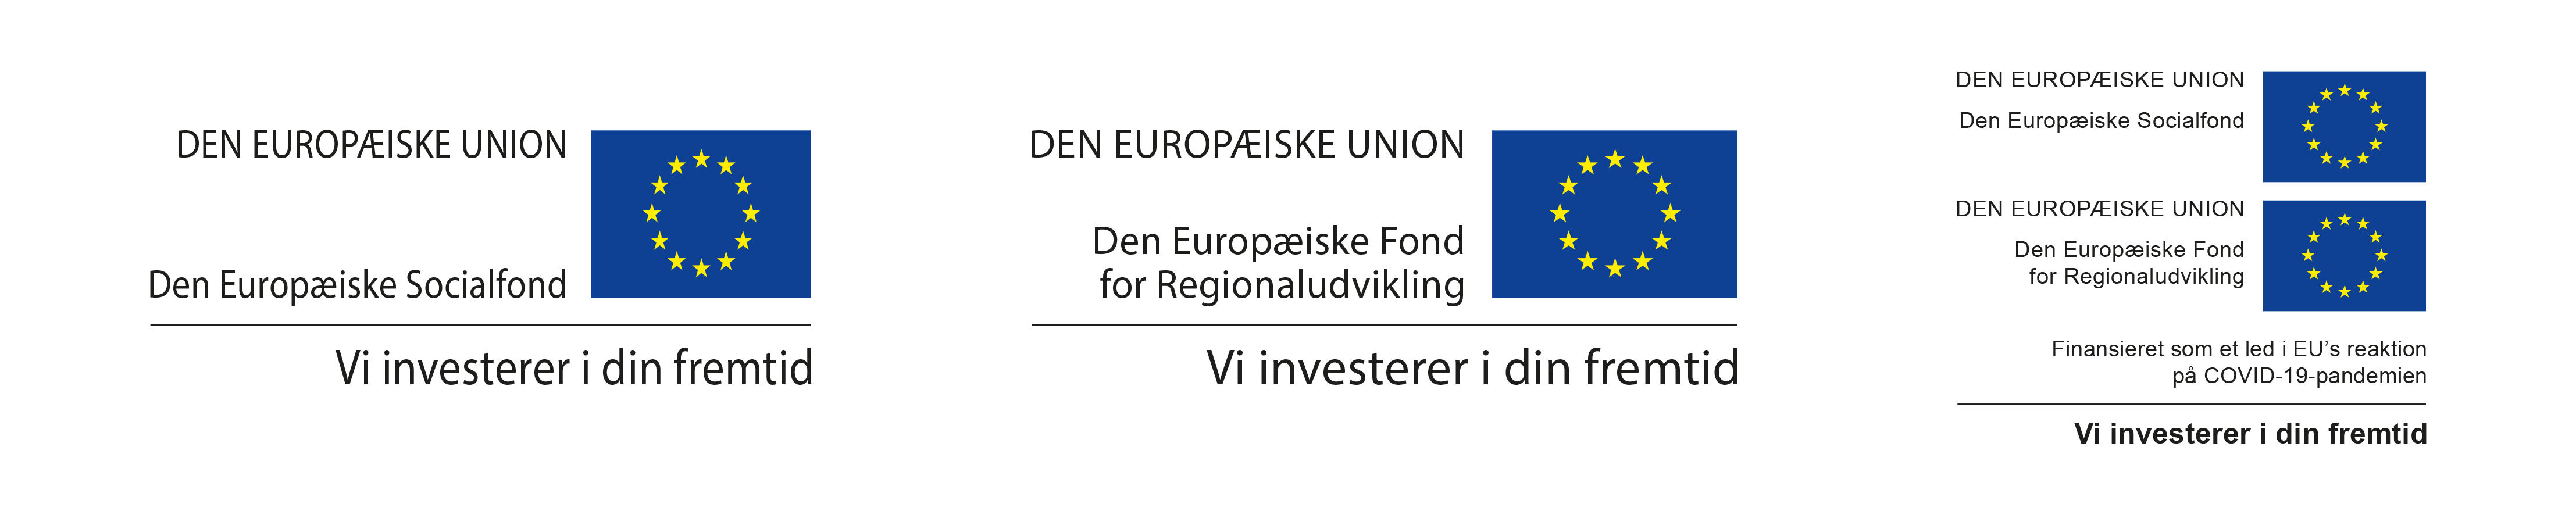 Banner med EU-logoer 2014-2020